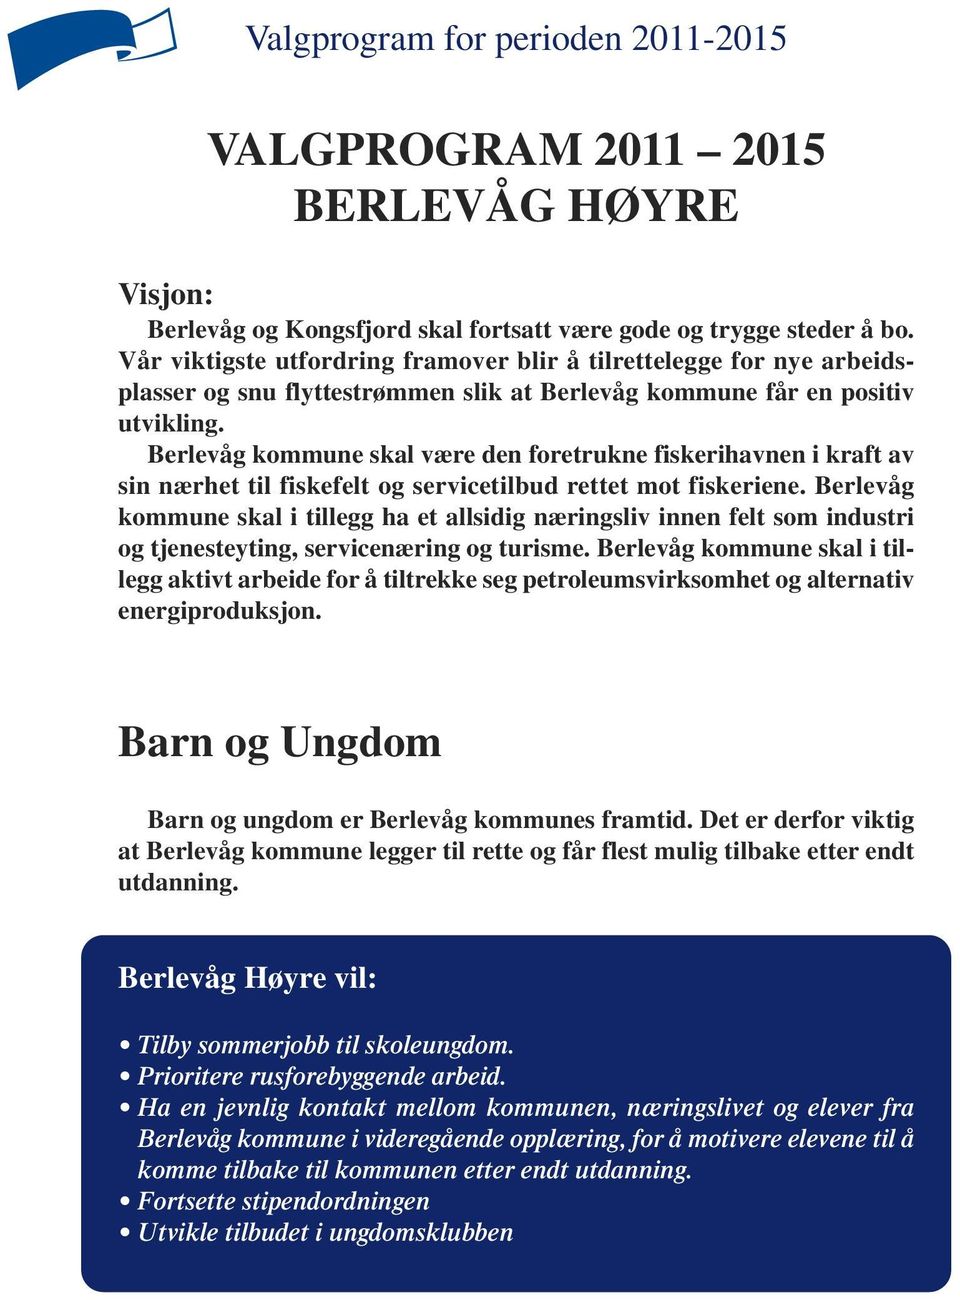 Berlevåg kommune skal være den foretrukne fiskerihavnen i kraft av sin nærhet til fiskefelt og servicetilbud rettet mot fiskeriene.